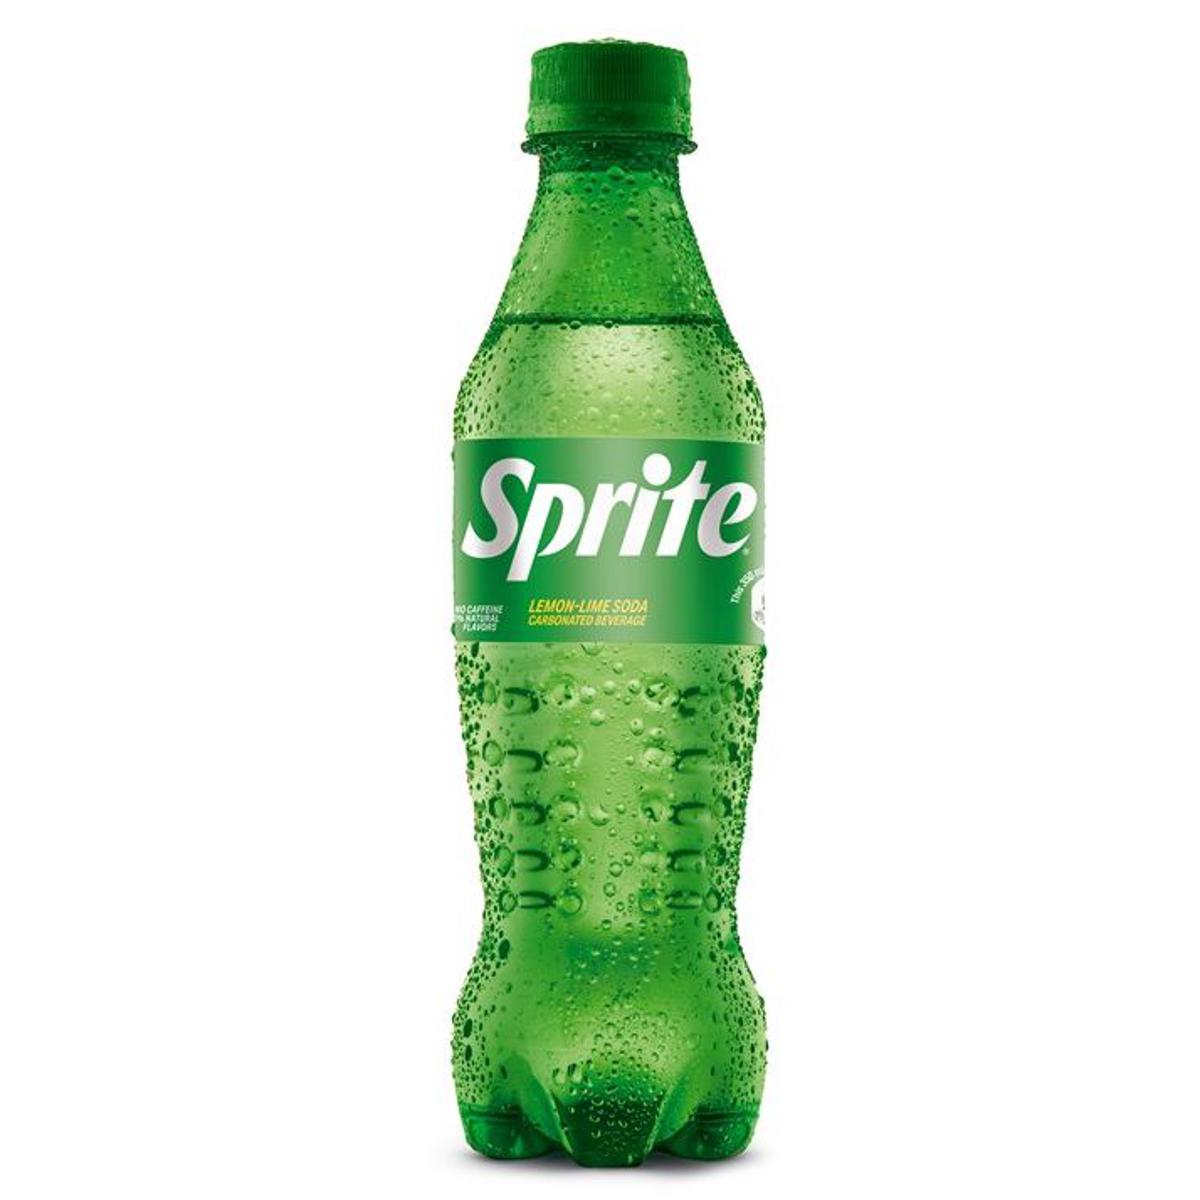 Sprite - Lemon Lime Soda - 350 mL